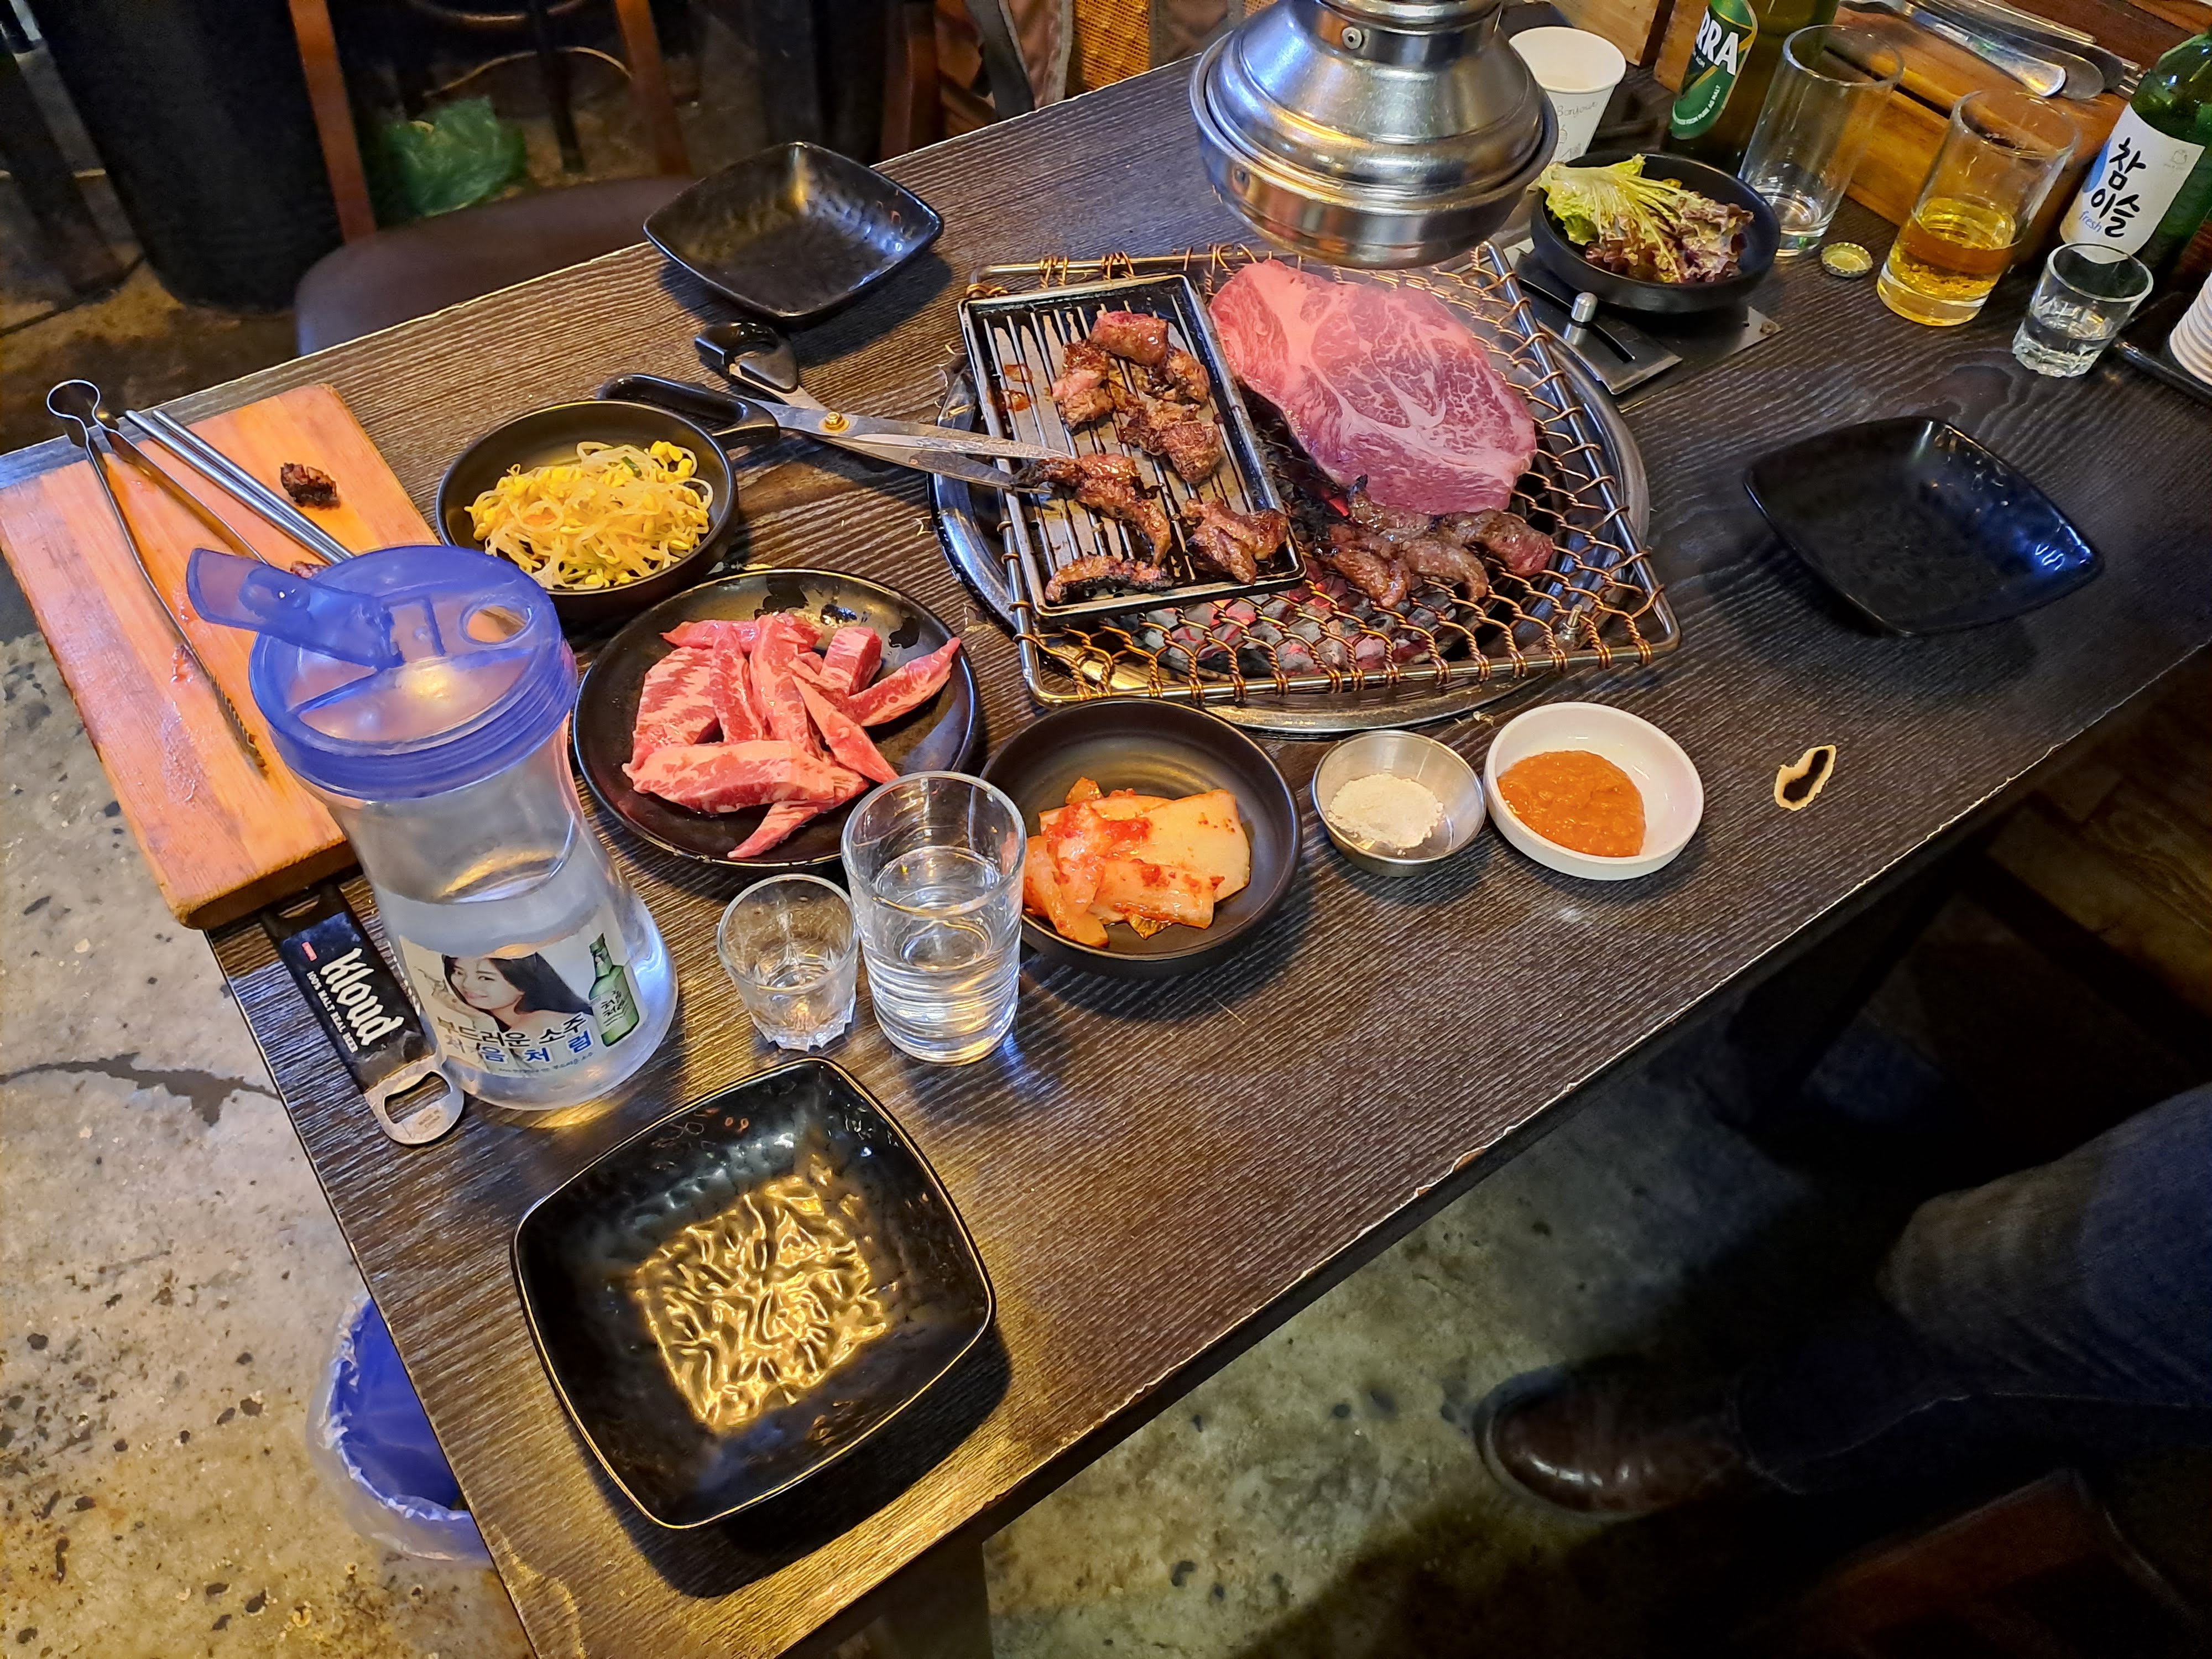 Az első, és eddig egyetlen alkalom, amikor minden szükséges kellék az asztalunkon volt: frissen sülő hús, víz, banchanok minden mennyiségben, a kiváló Terra sör, és soju.